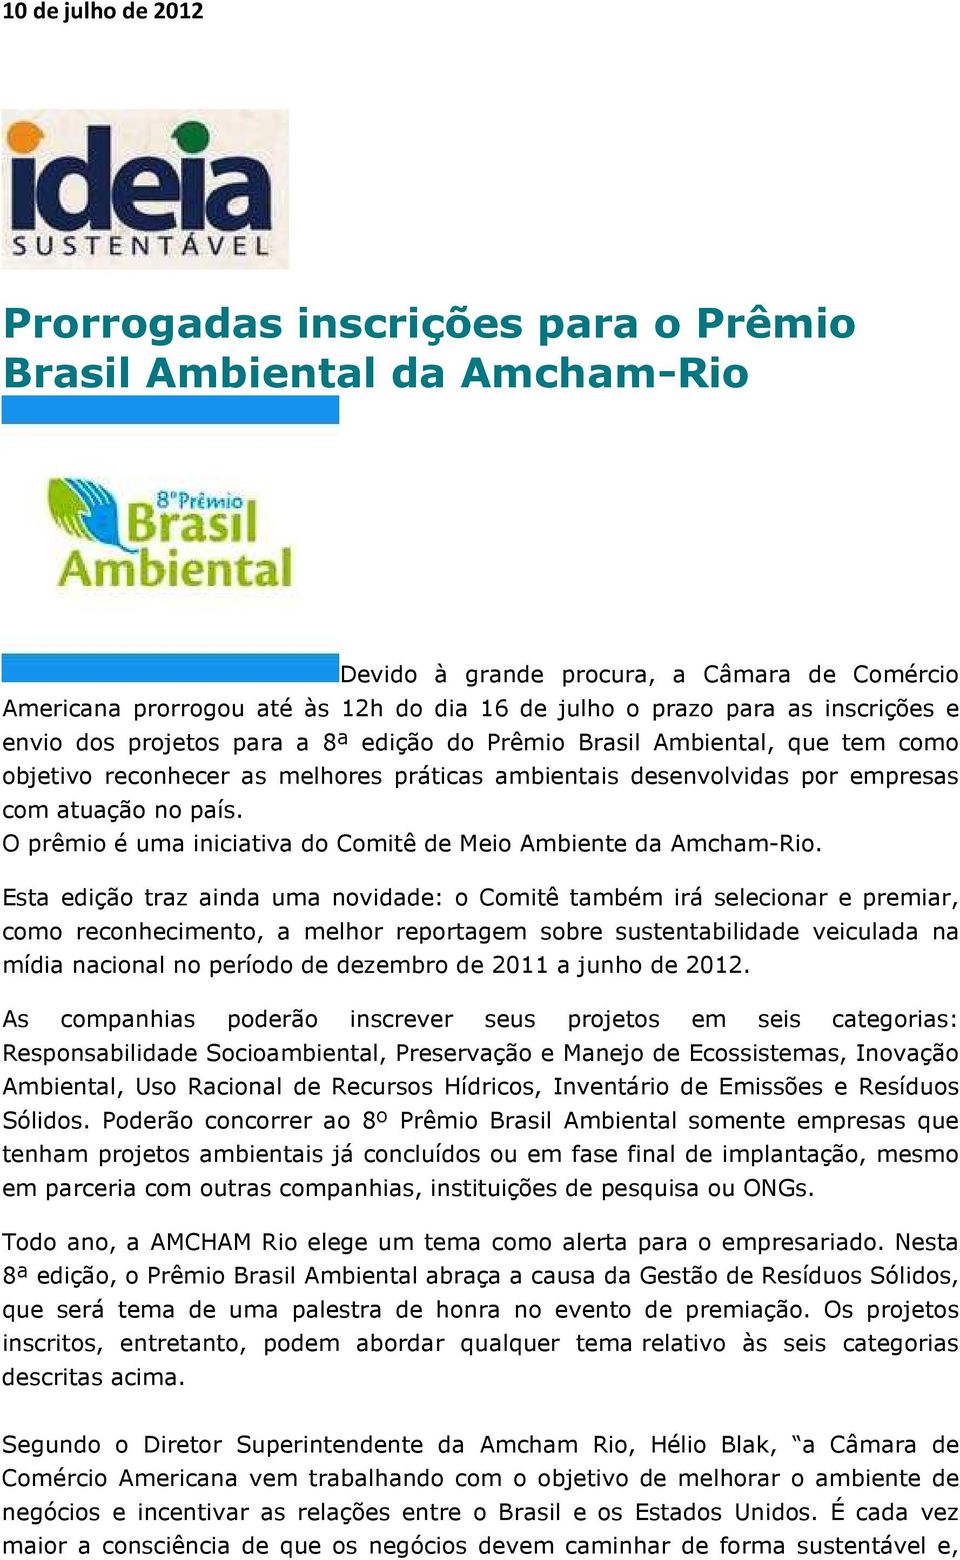 O prêmio é uma iniciativa do Comitê de Meio Ambiente da Amcham-Rio.